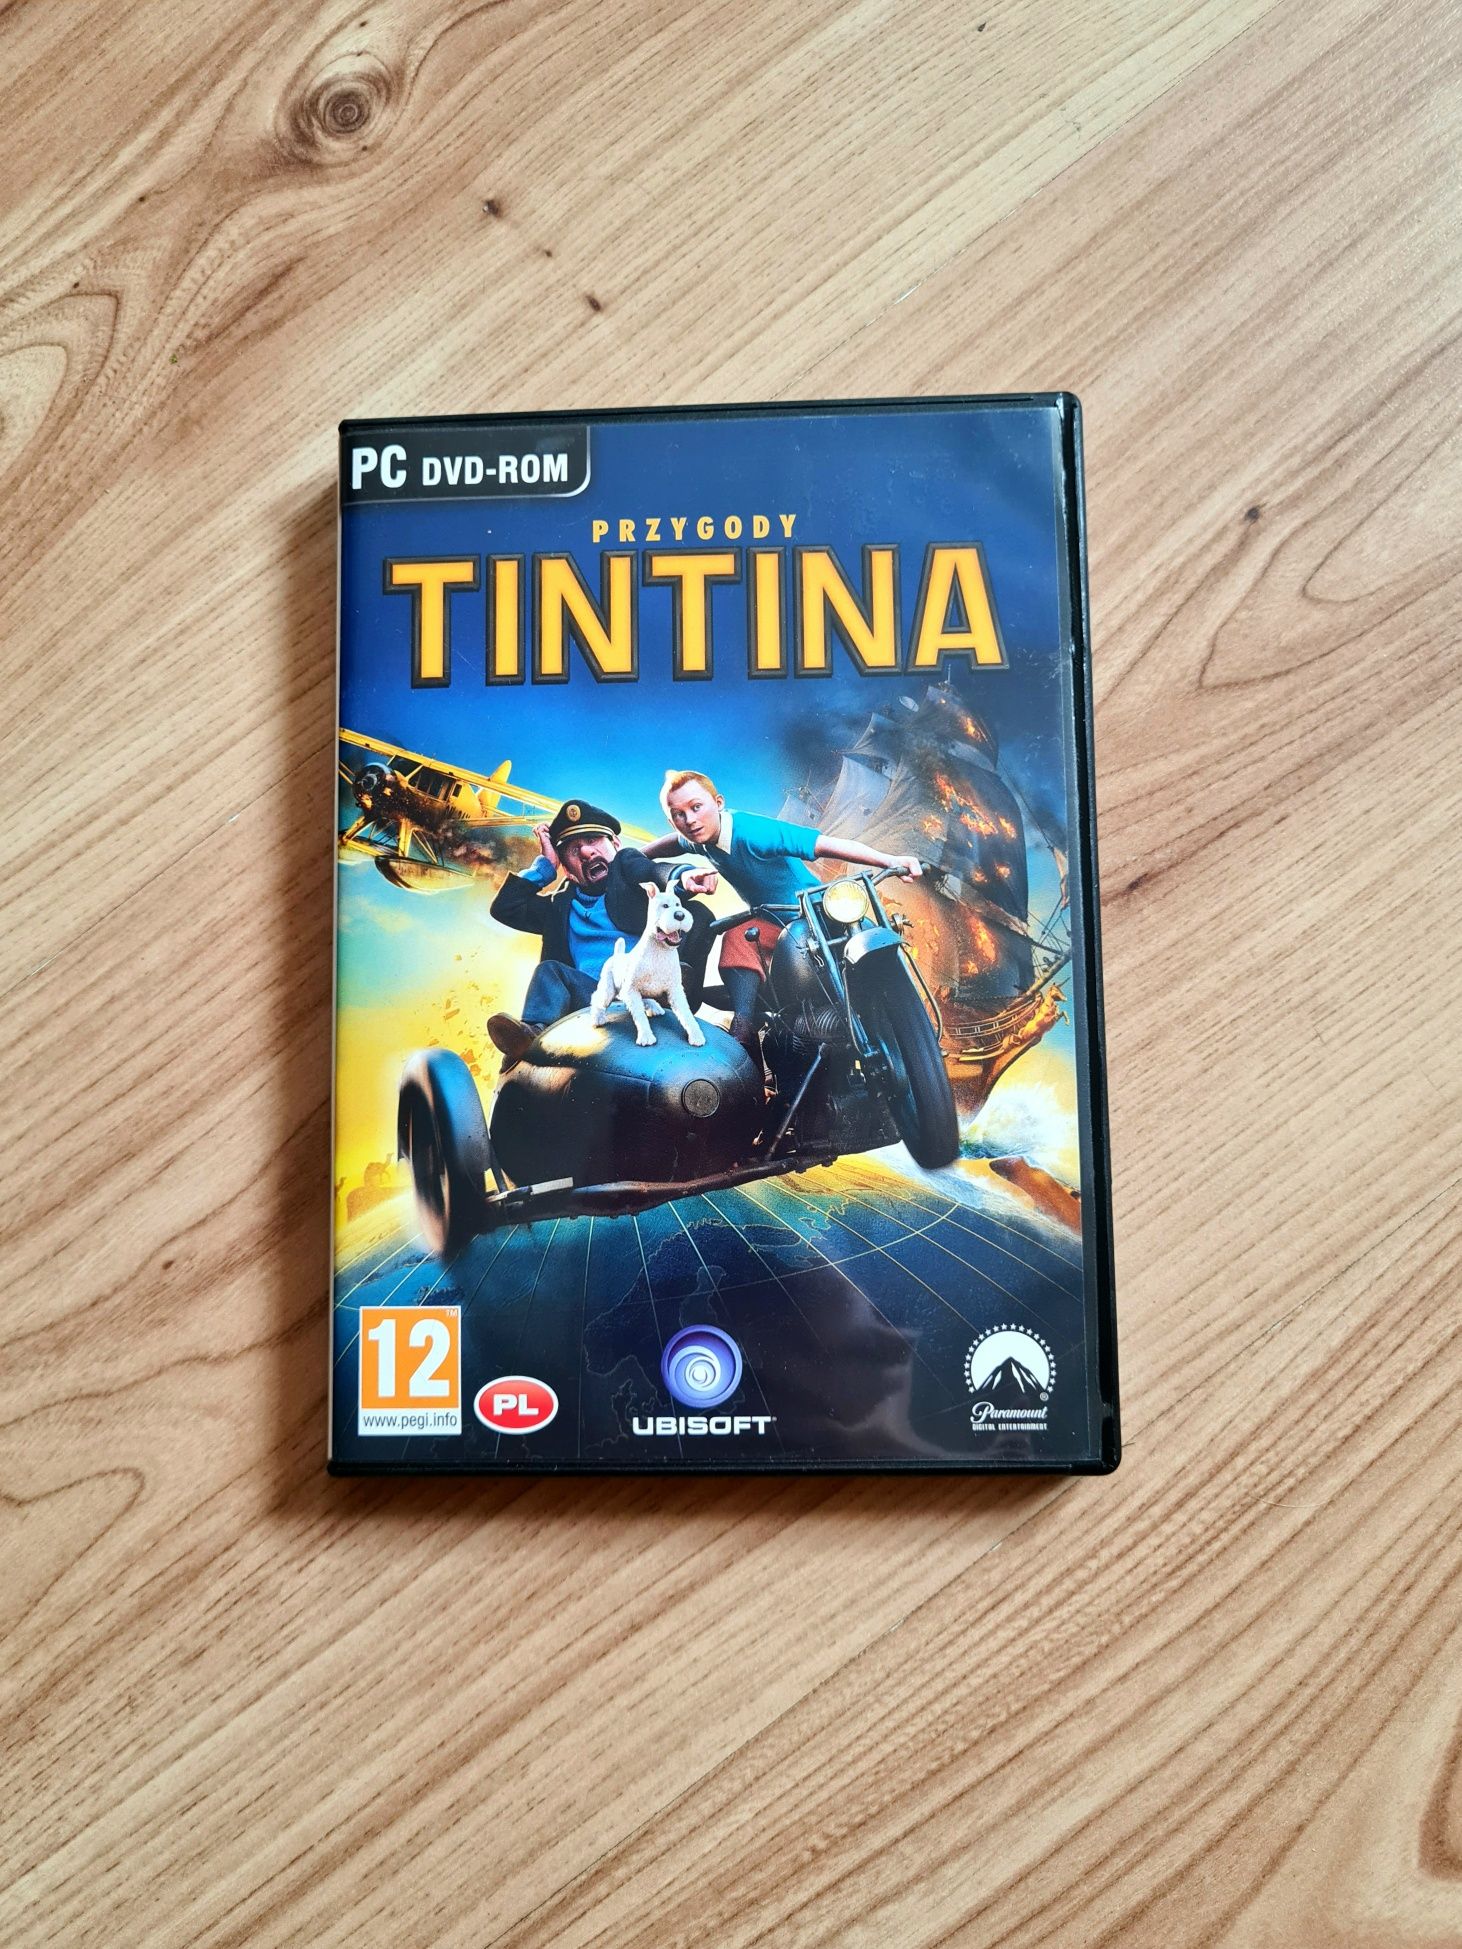 Gra przygodowa PC Przygody Tintina w pl wersji językowej